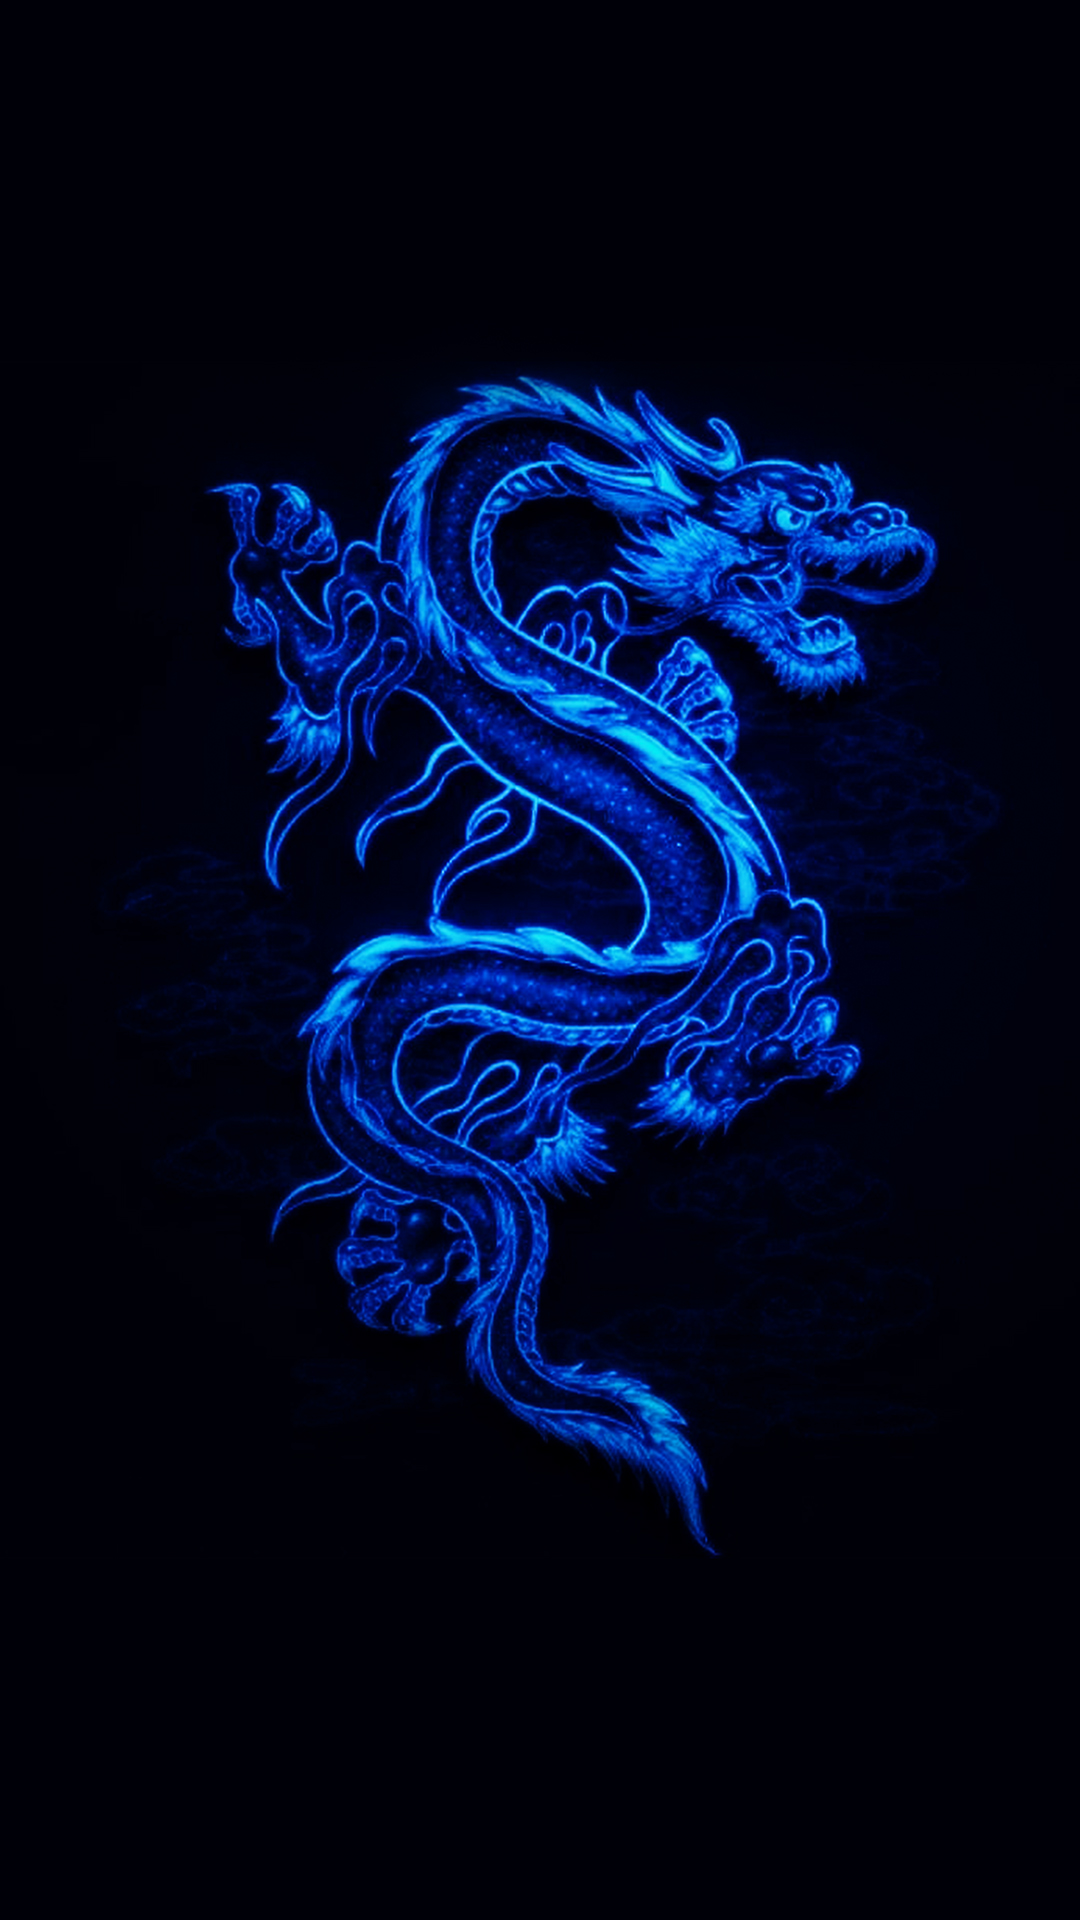 fond d'écran de téléphone dragon,bleu,bleu électrique,police de caractère,dragon,illustration